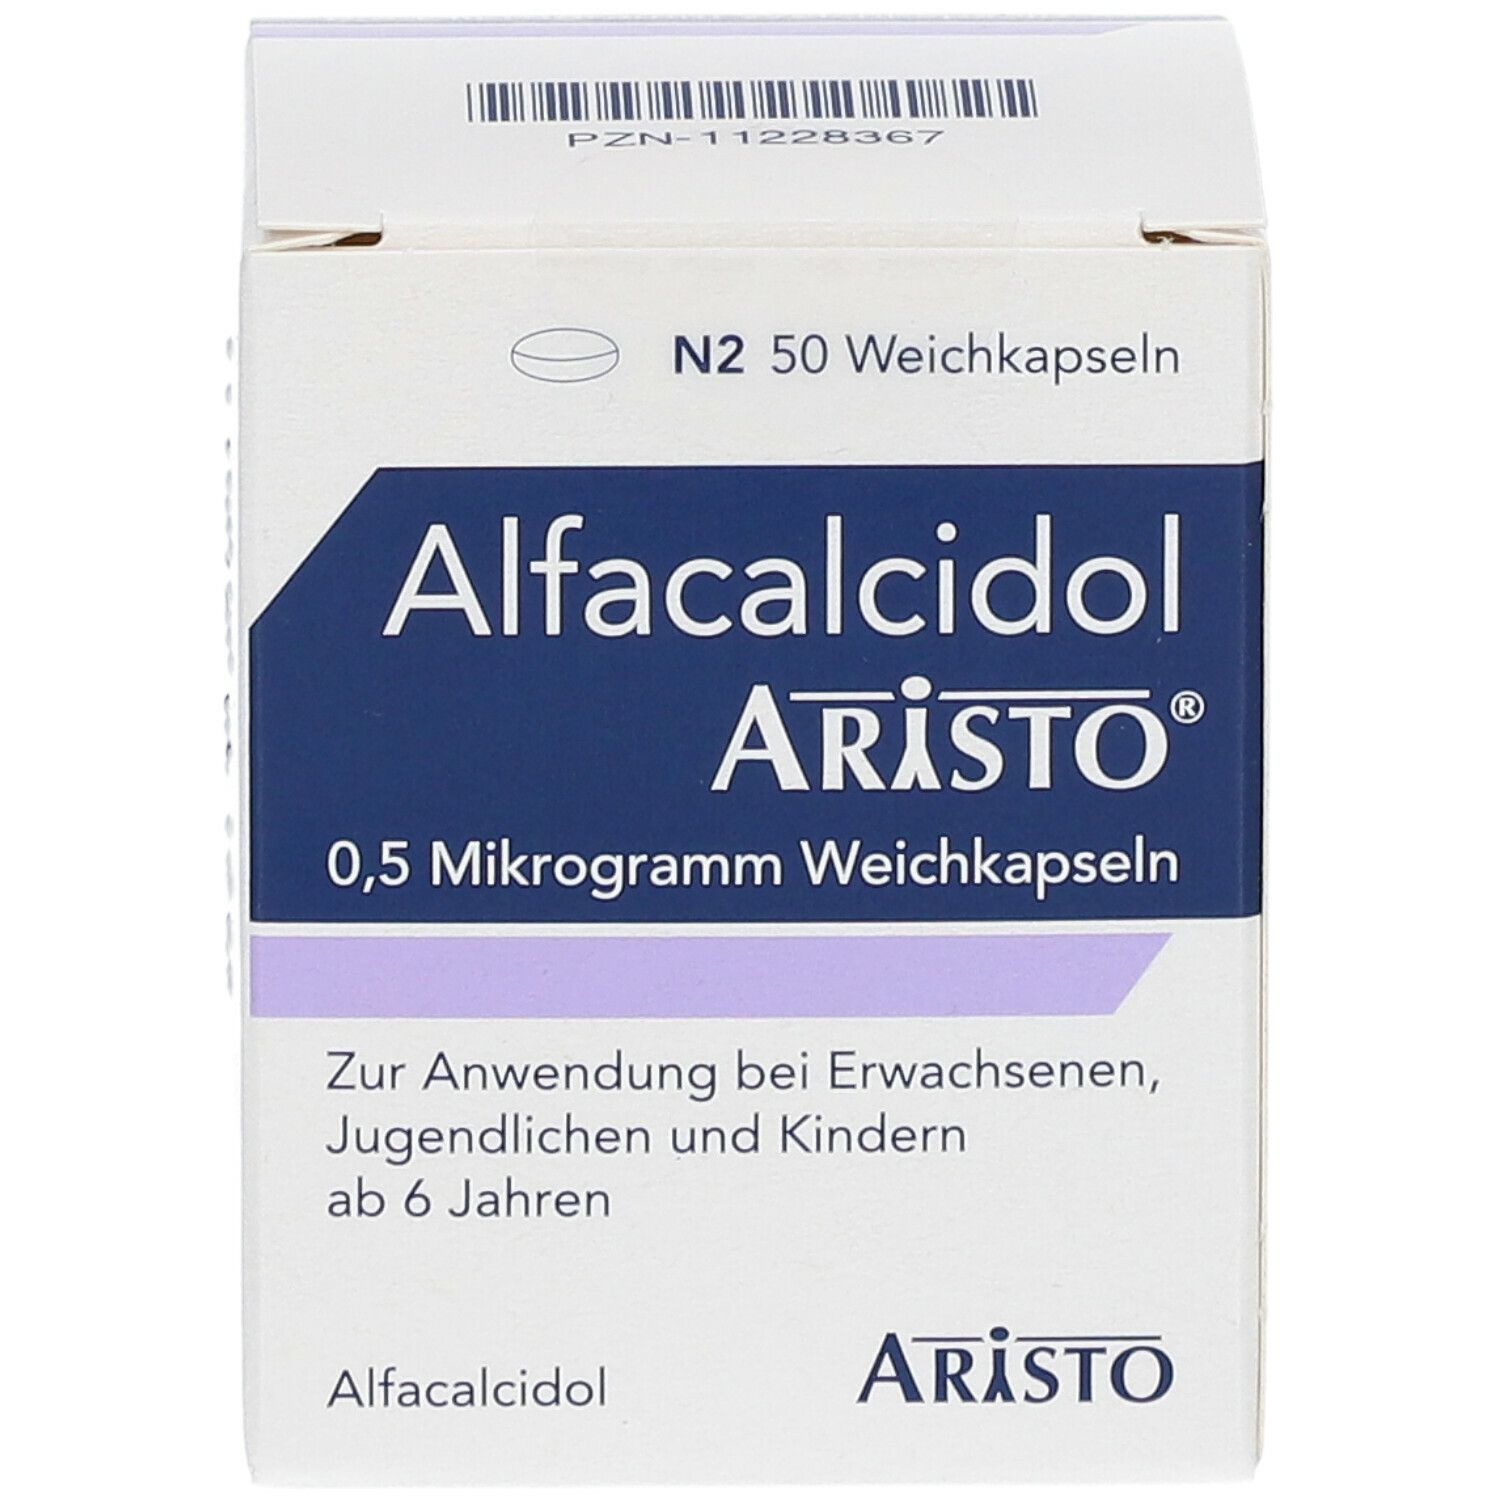 Alfacalcidol Aristo® 0,5 mikrogramm